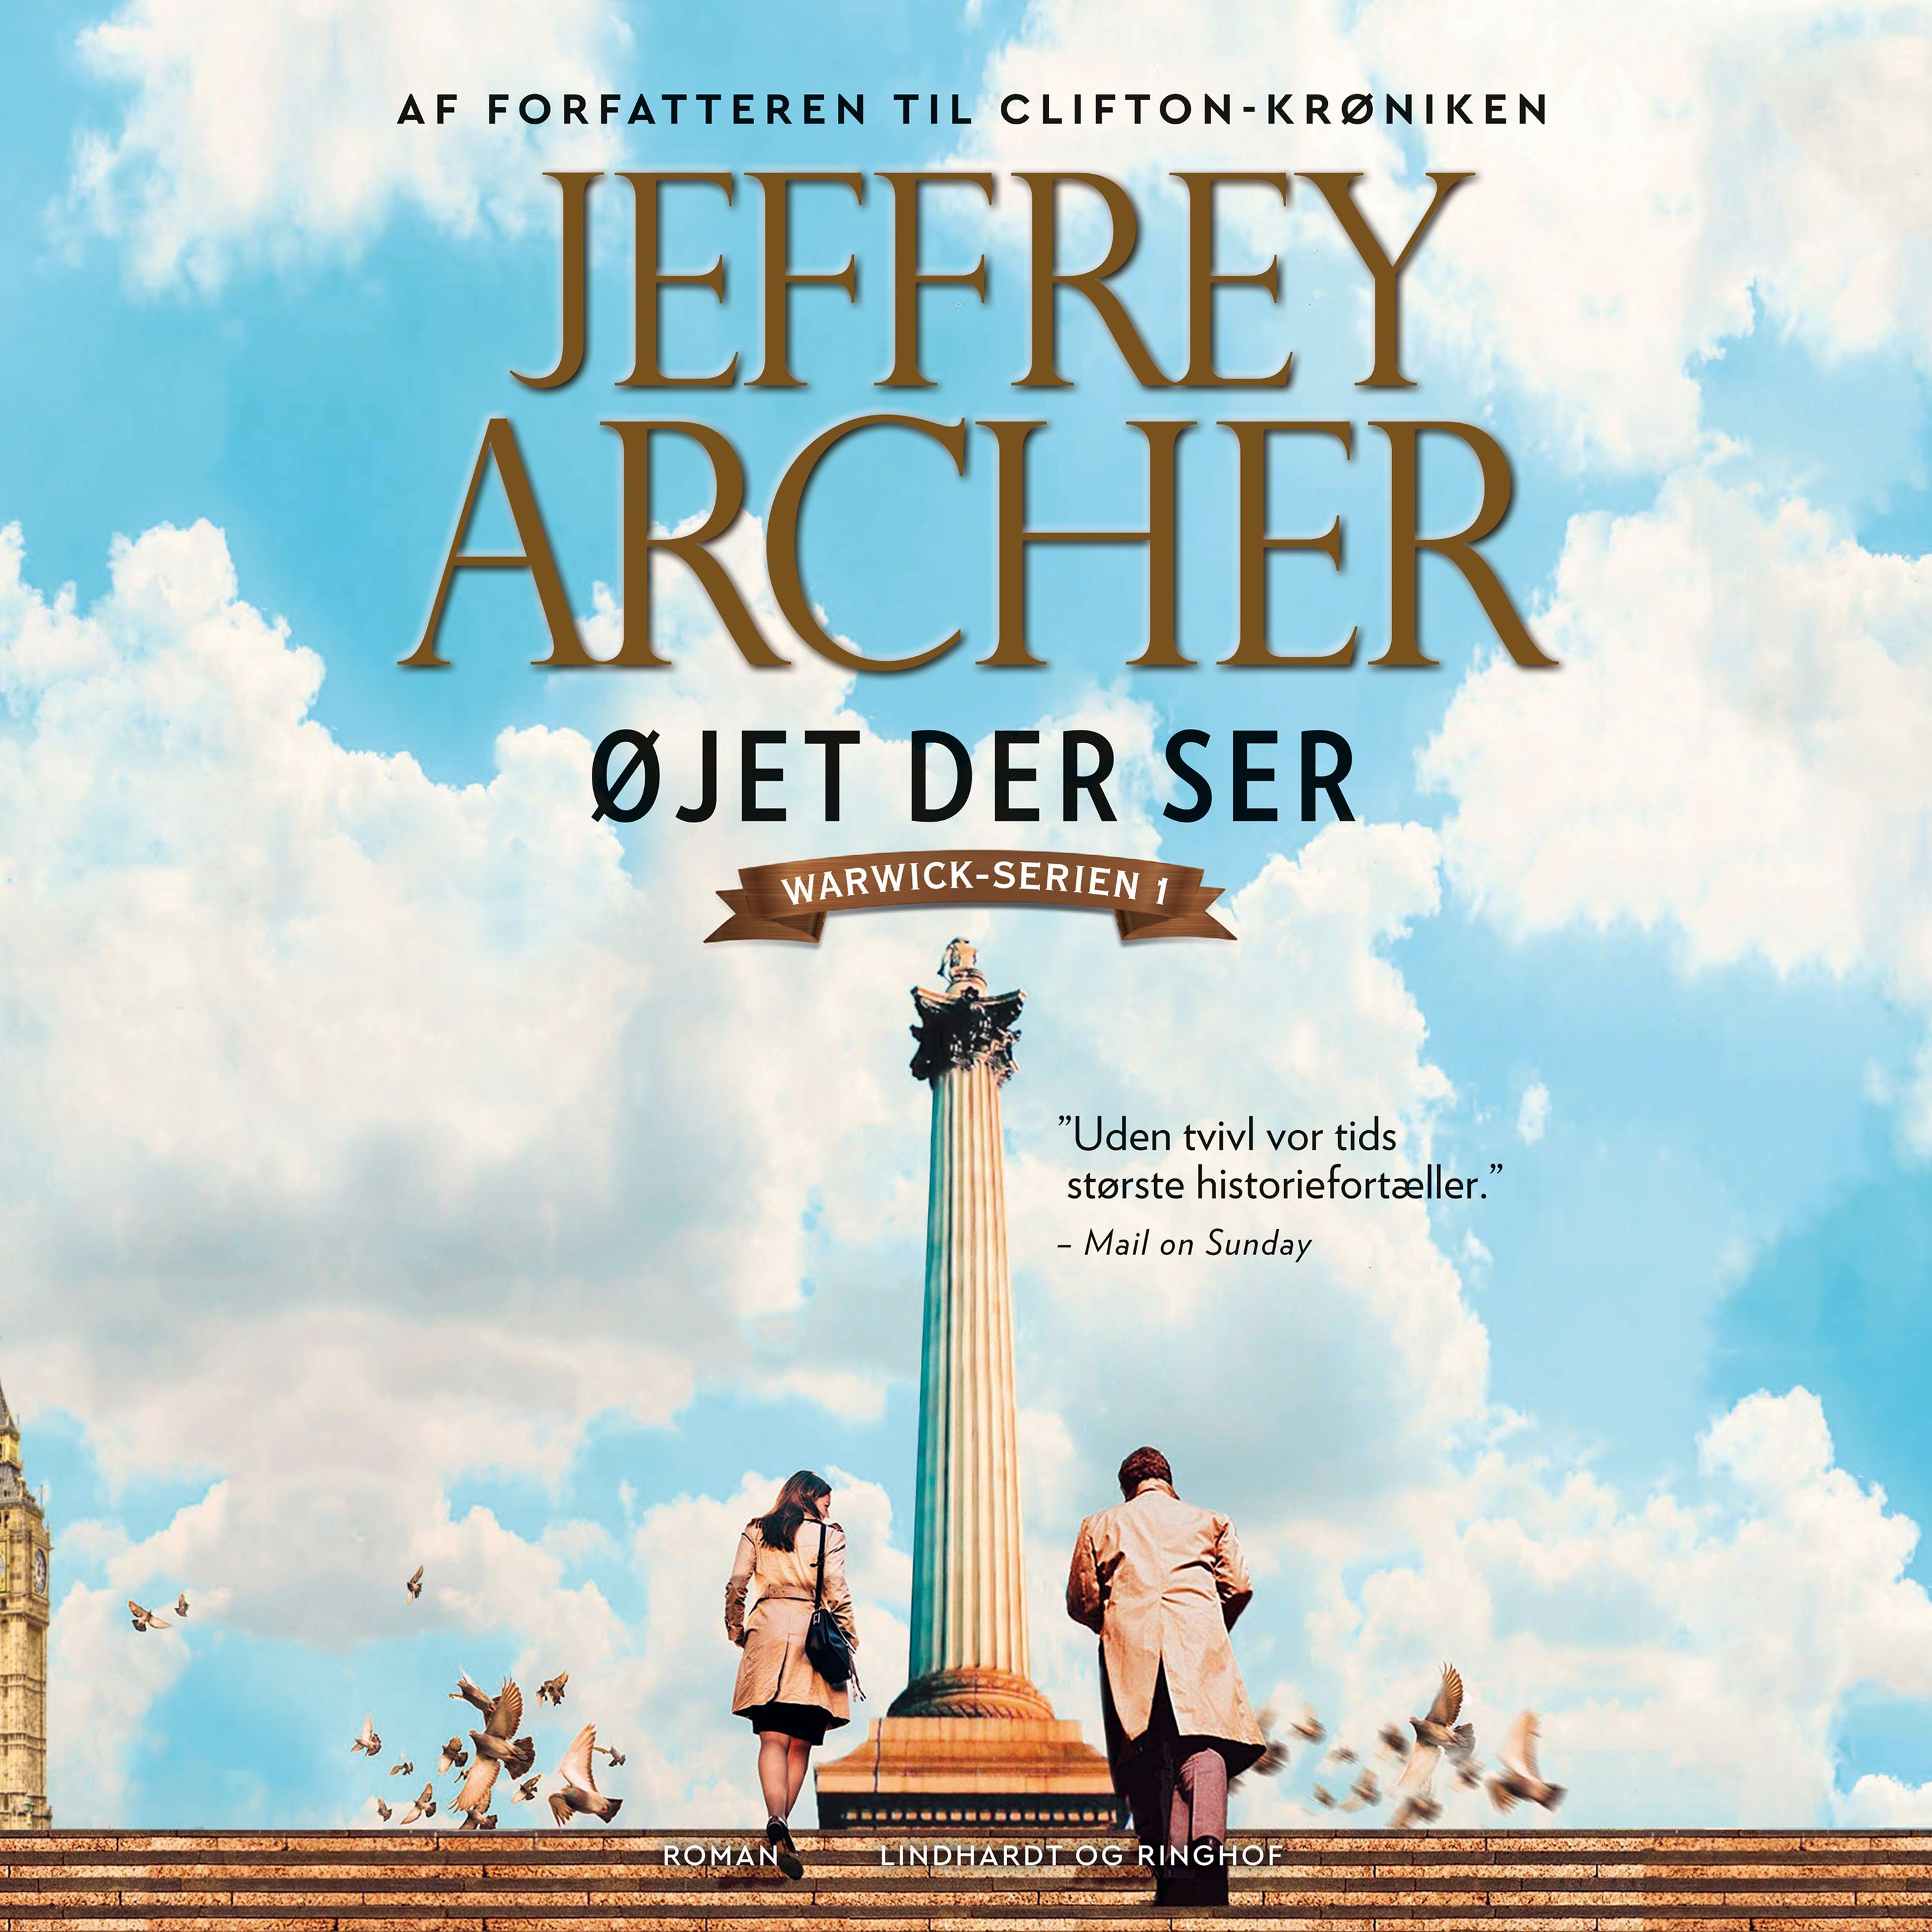 Øjet der ser, audiobook by Jeffrey Archer